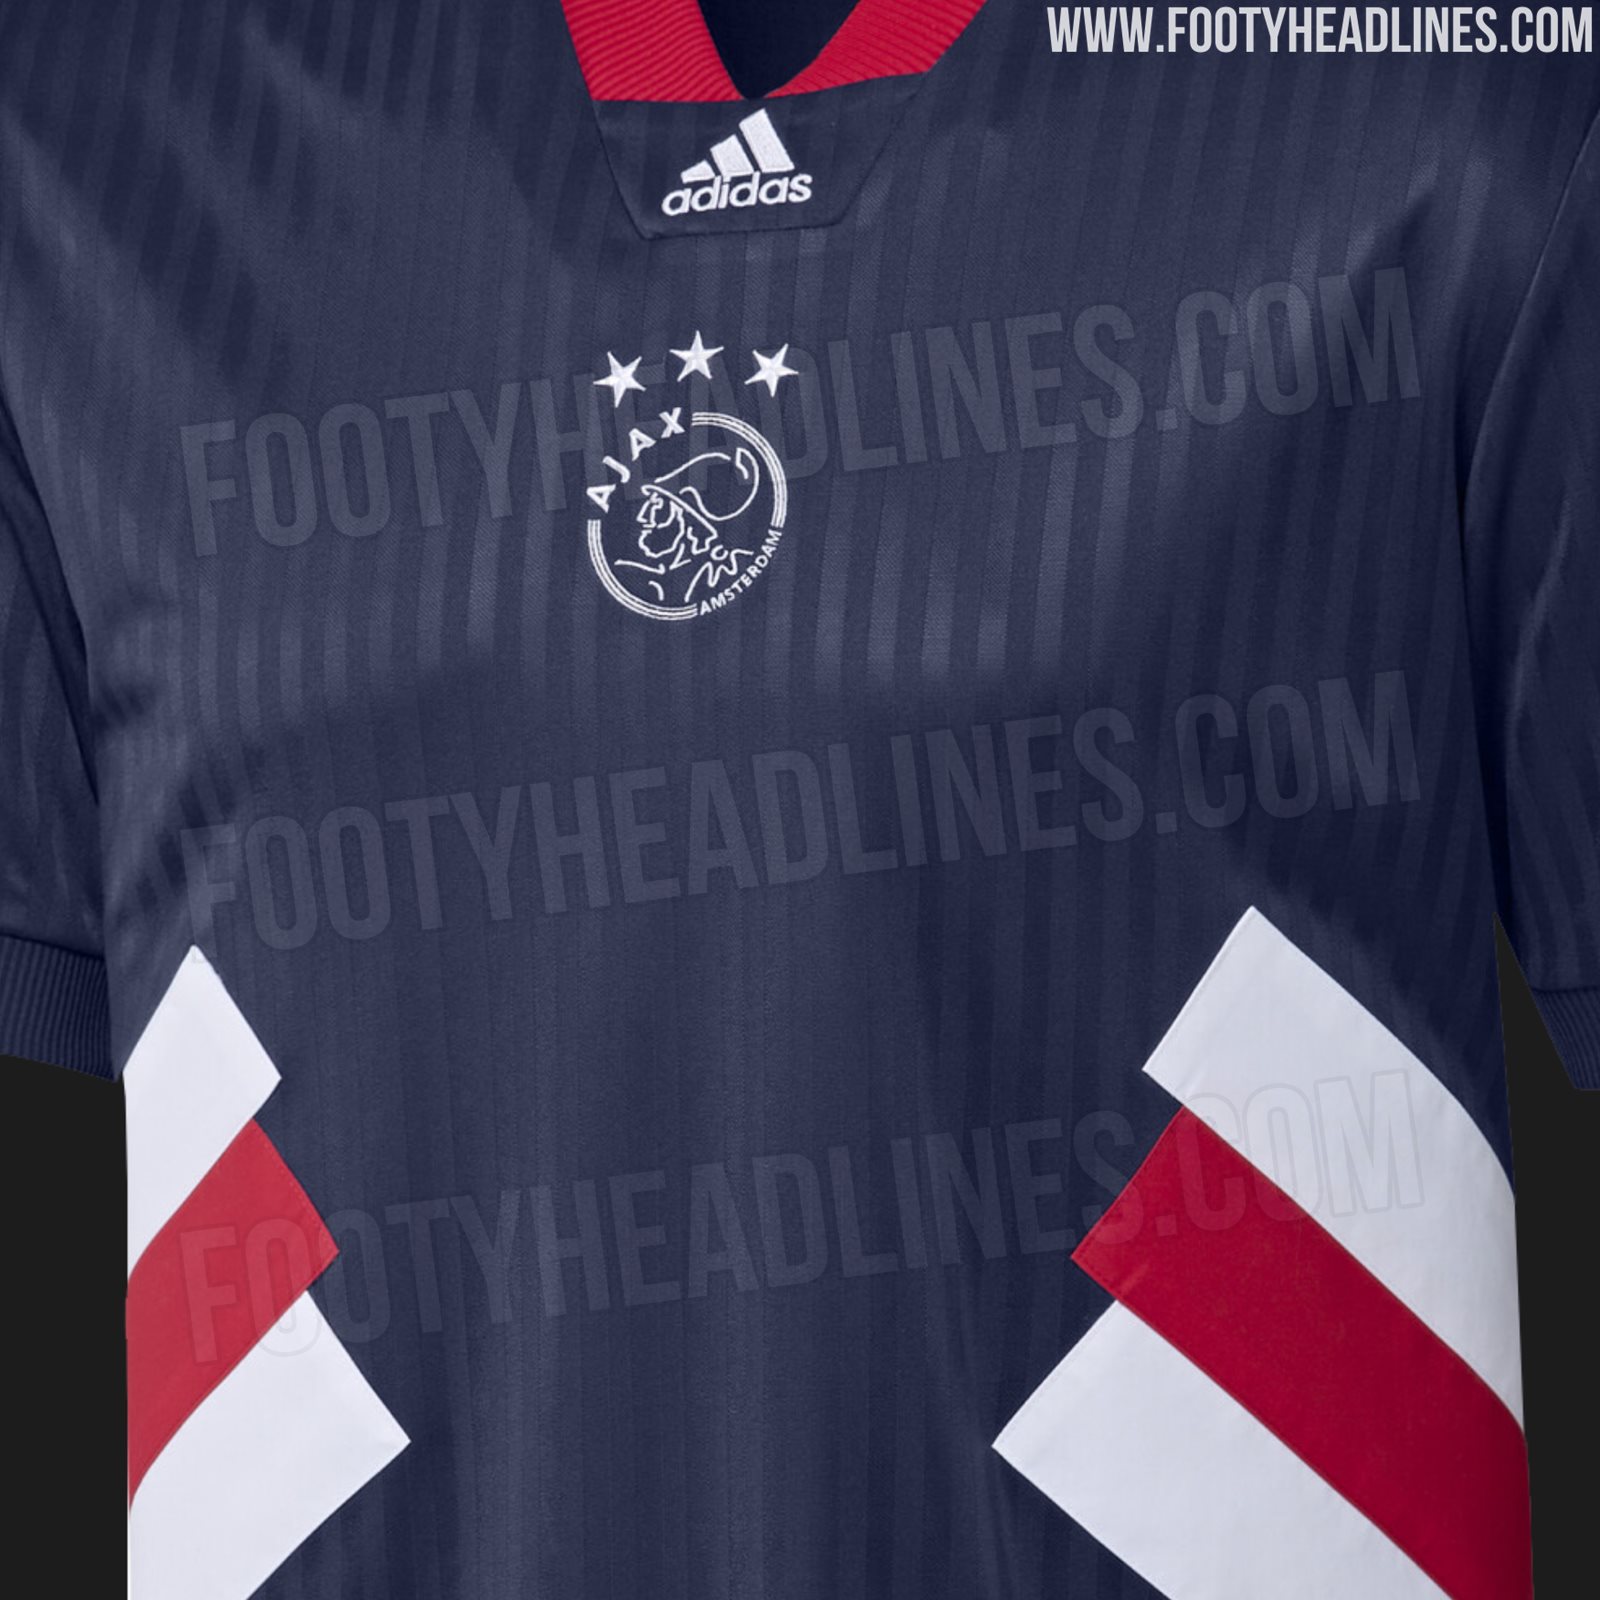 Adidas Ajax 2023 Icon Remake Leaked - Footy Headlines